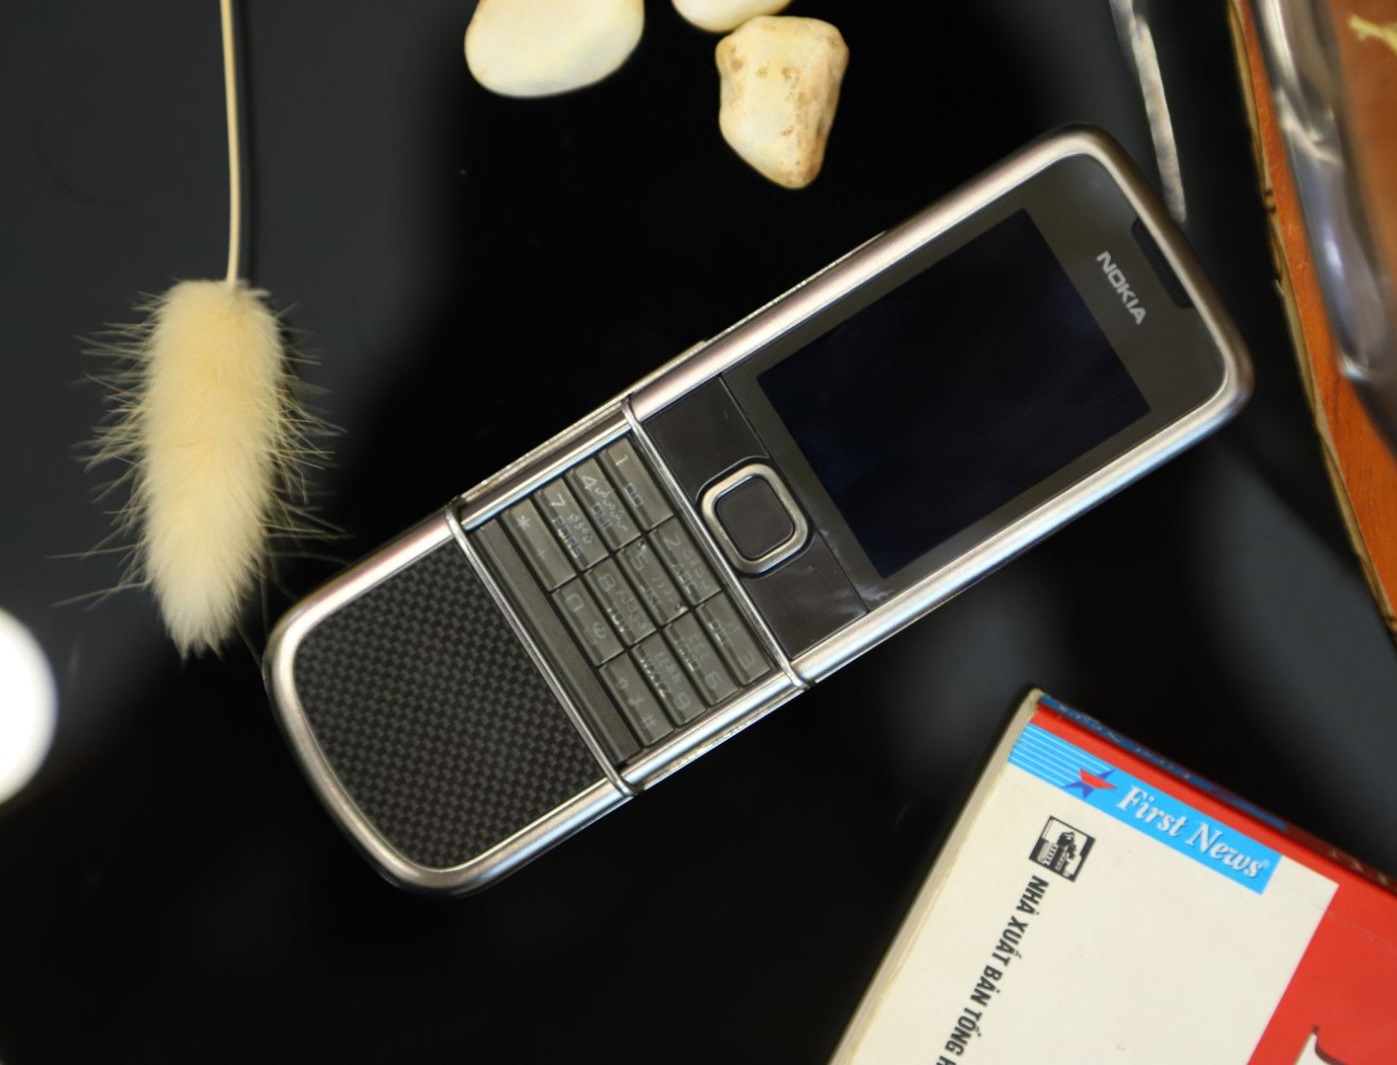 Nokia 8800E Carbon Arte zin đang chờ đón bạn trong bộ sưu tập hình ảnh tuyệt đẹp. Với vẻ ngoài sang trọng, đẳng cấp và bắt mắt, chiếc điện thoại đích thực sẽ khiến bạn không thể rời mắt khỏi những hình ảnh tuyệt vời này. Đừng bỏ lỡ cơ hội để tận hưởng những khoảnh khắc đáng nhớ nhé.